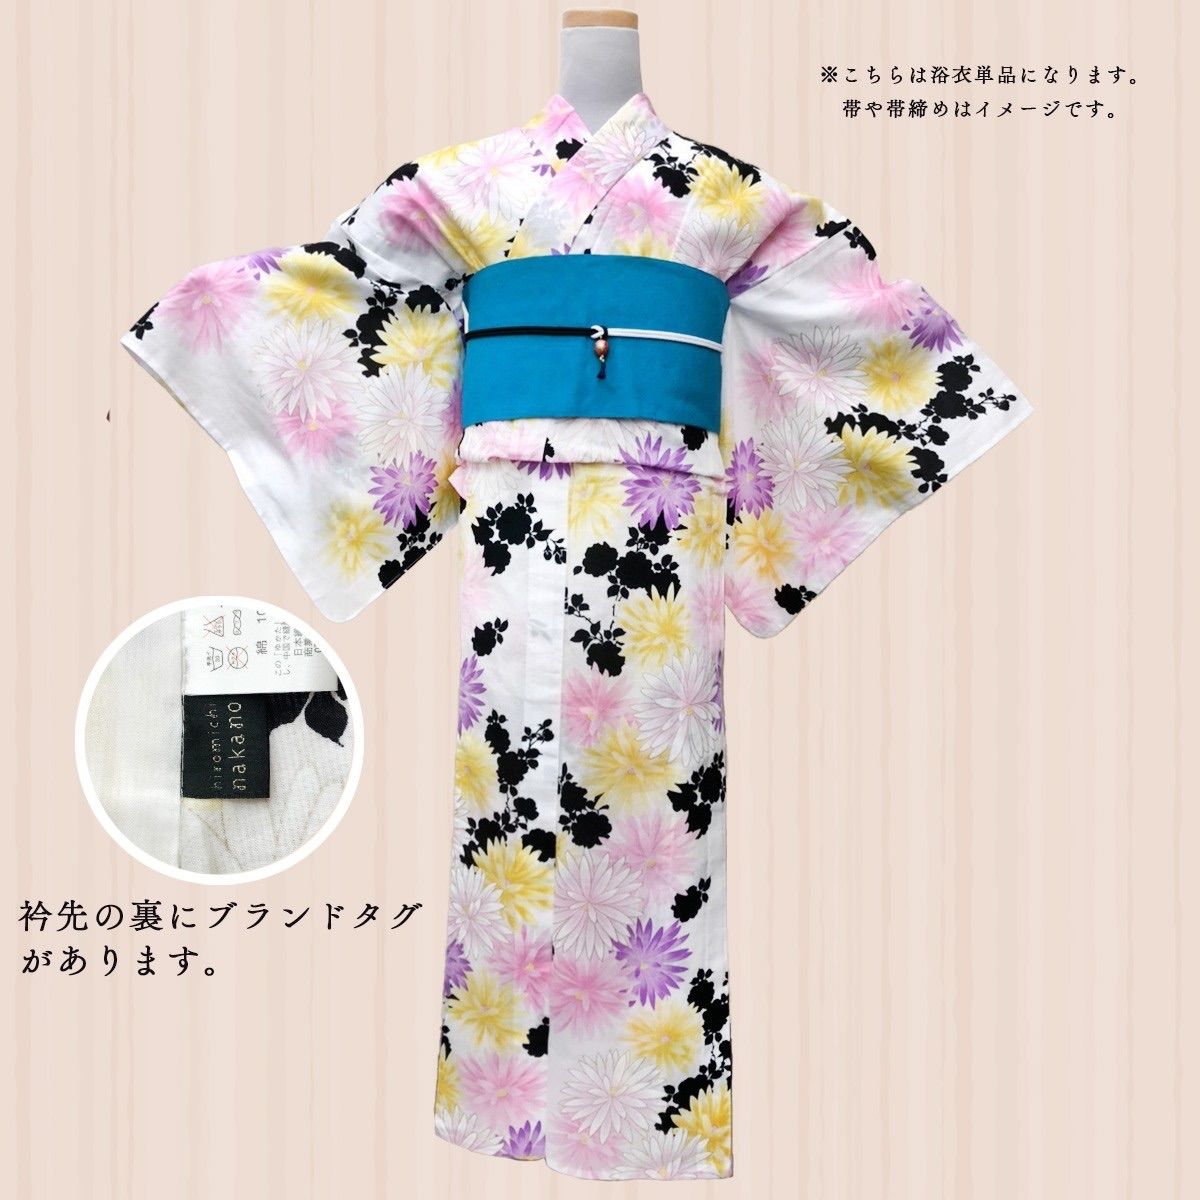 hiromichi nakano（ヒロミチナカノ）浴衣反物 綿100% リメイク+